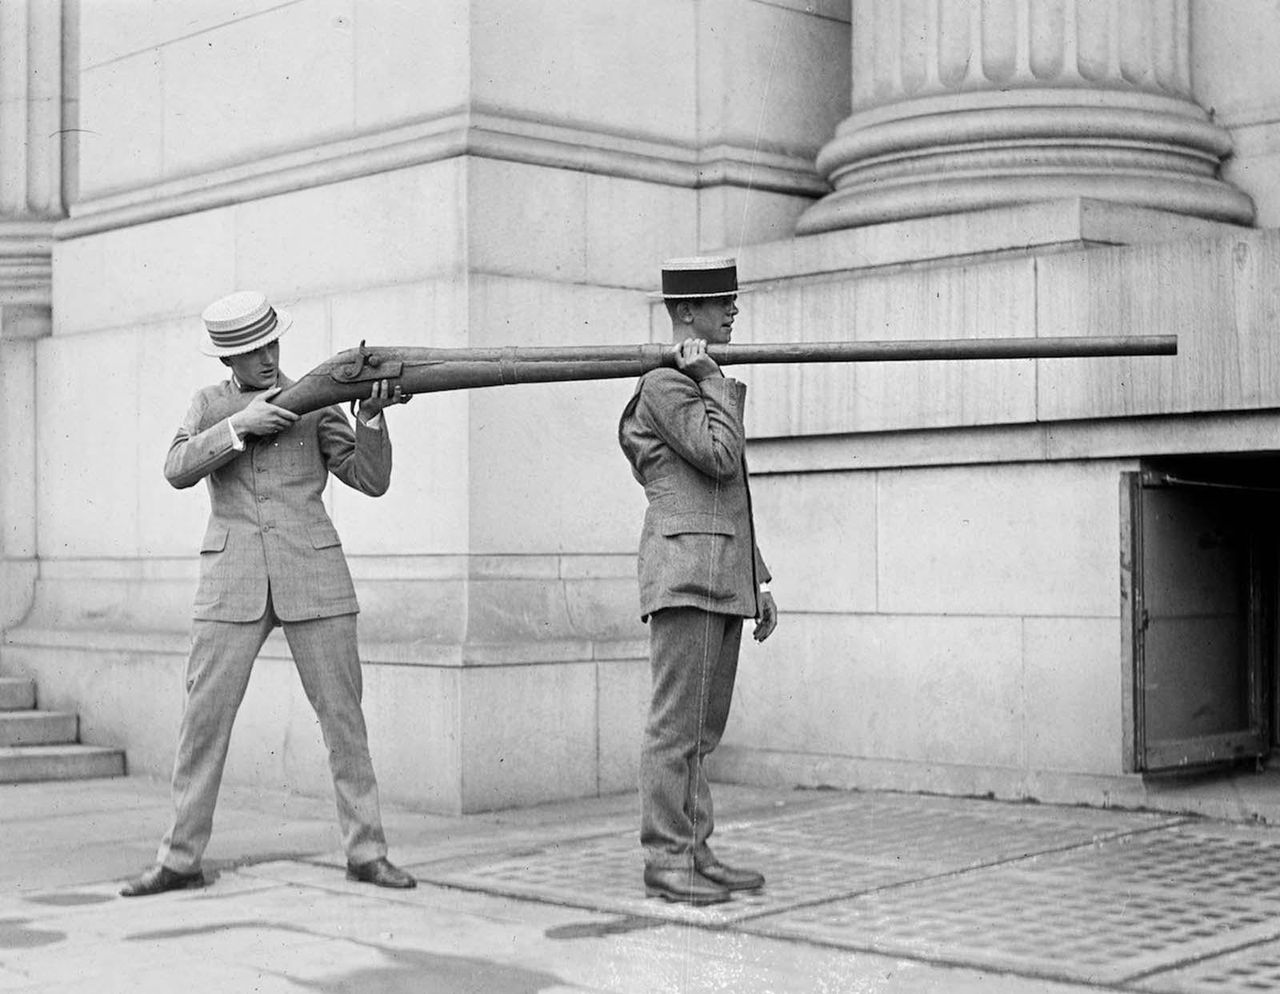 Punt gun: zakazana broń. Monstrualna strzelba dla olbrzyma